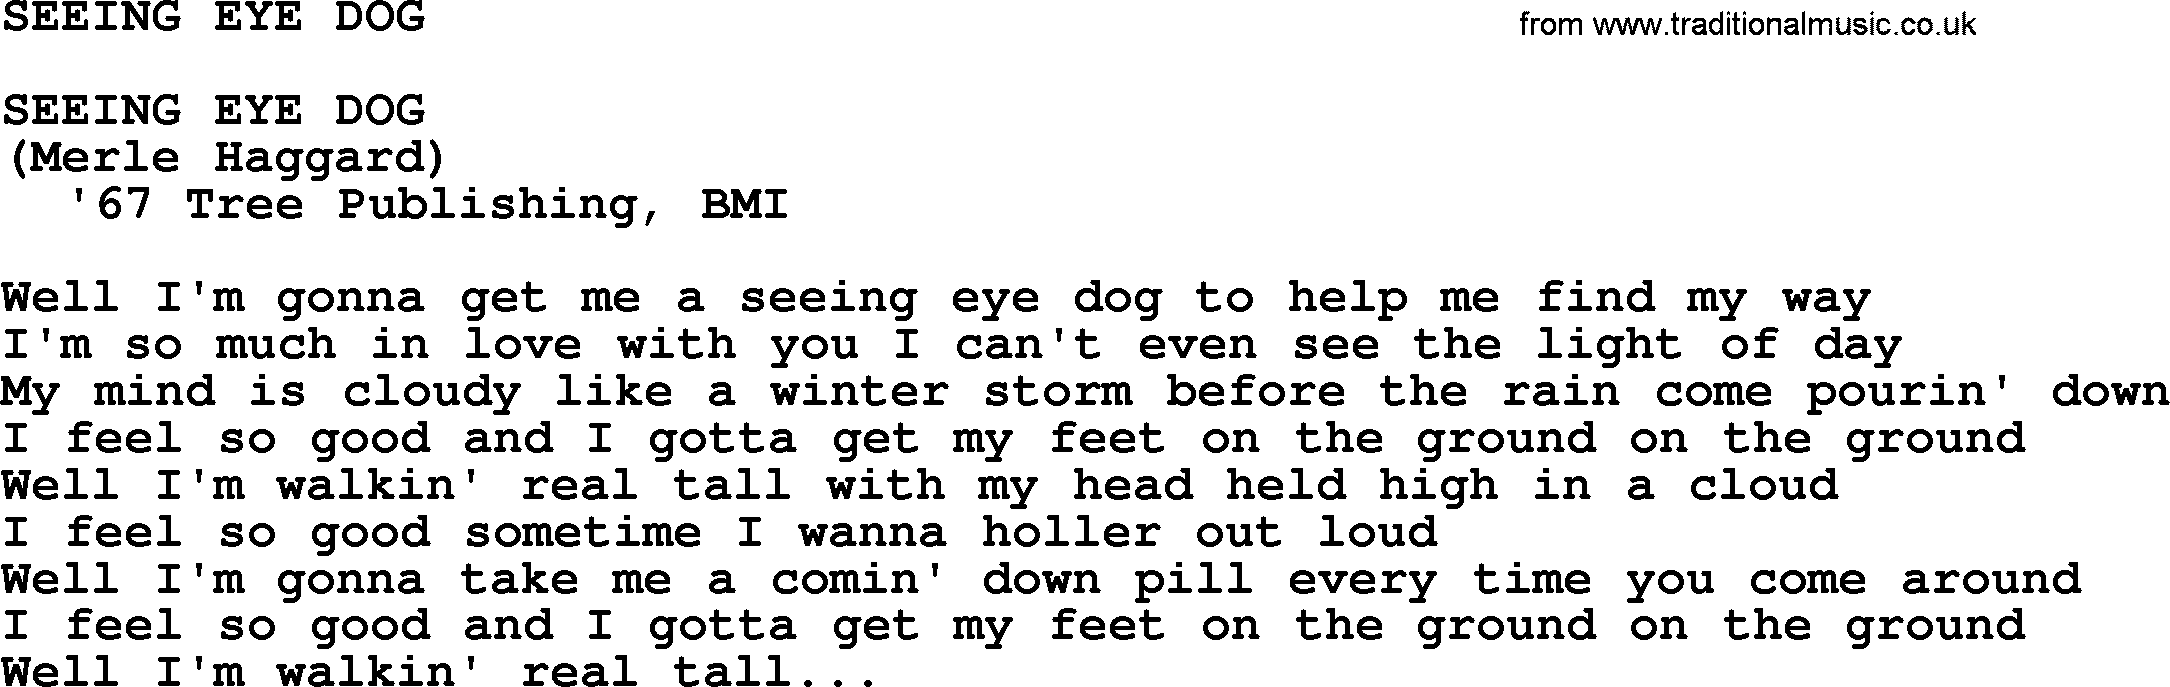 Merle Haggard song: Seeing Eye Dog, lyrics.